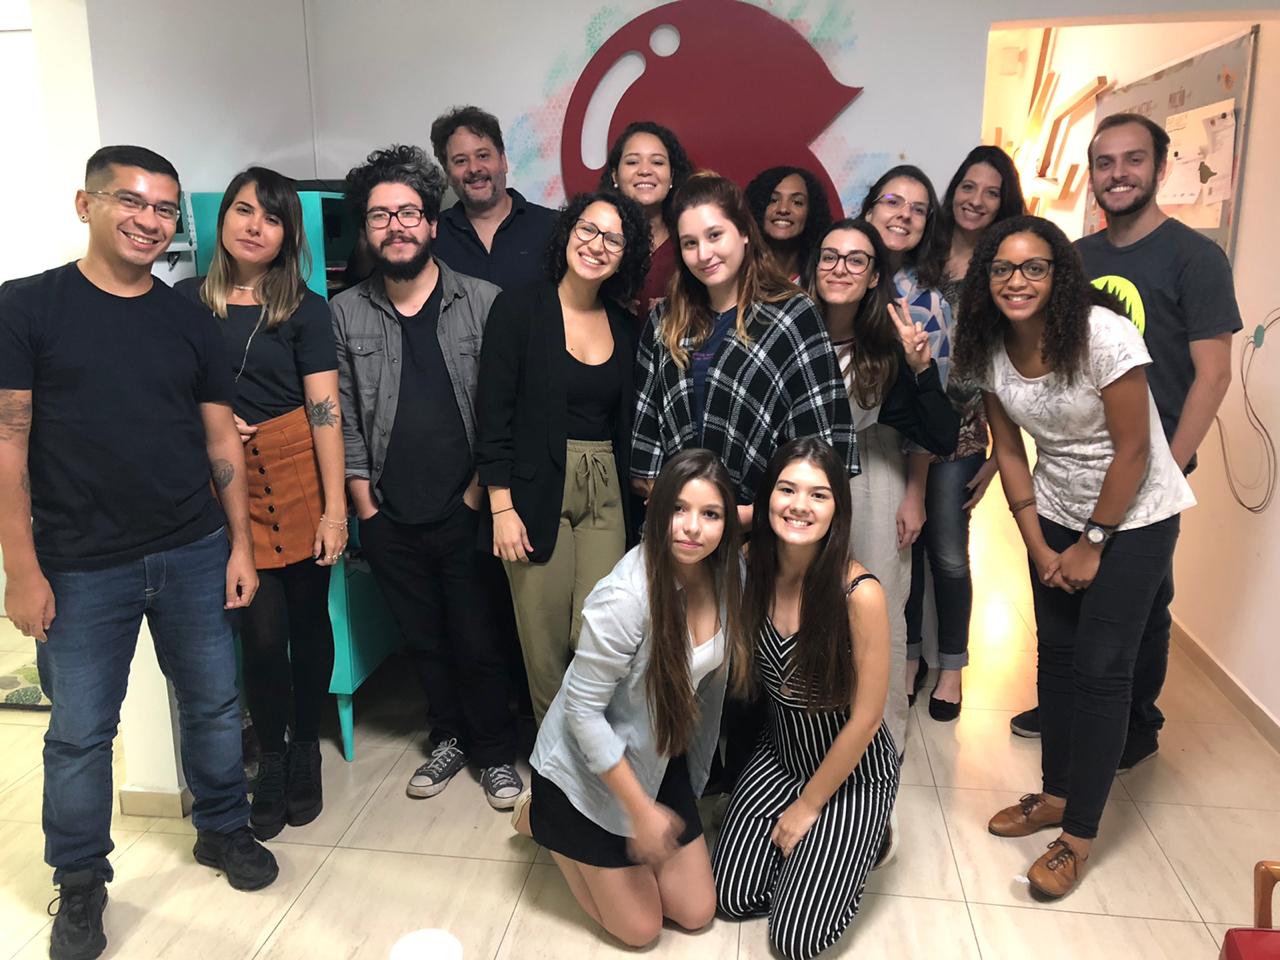 Equipe Sabiá com vencedores do Inova Jovem 2019 que participaram do summer job